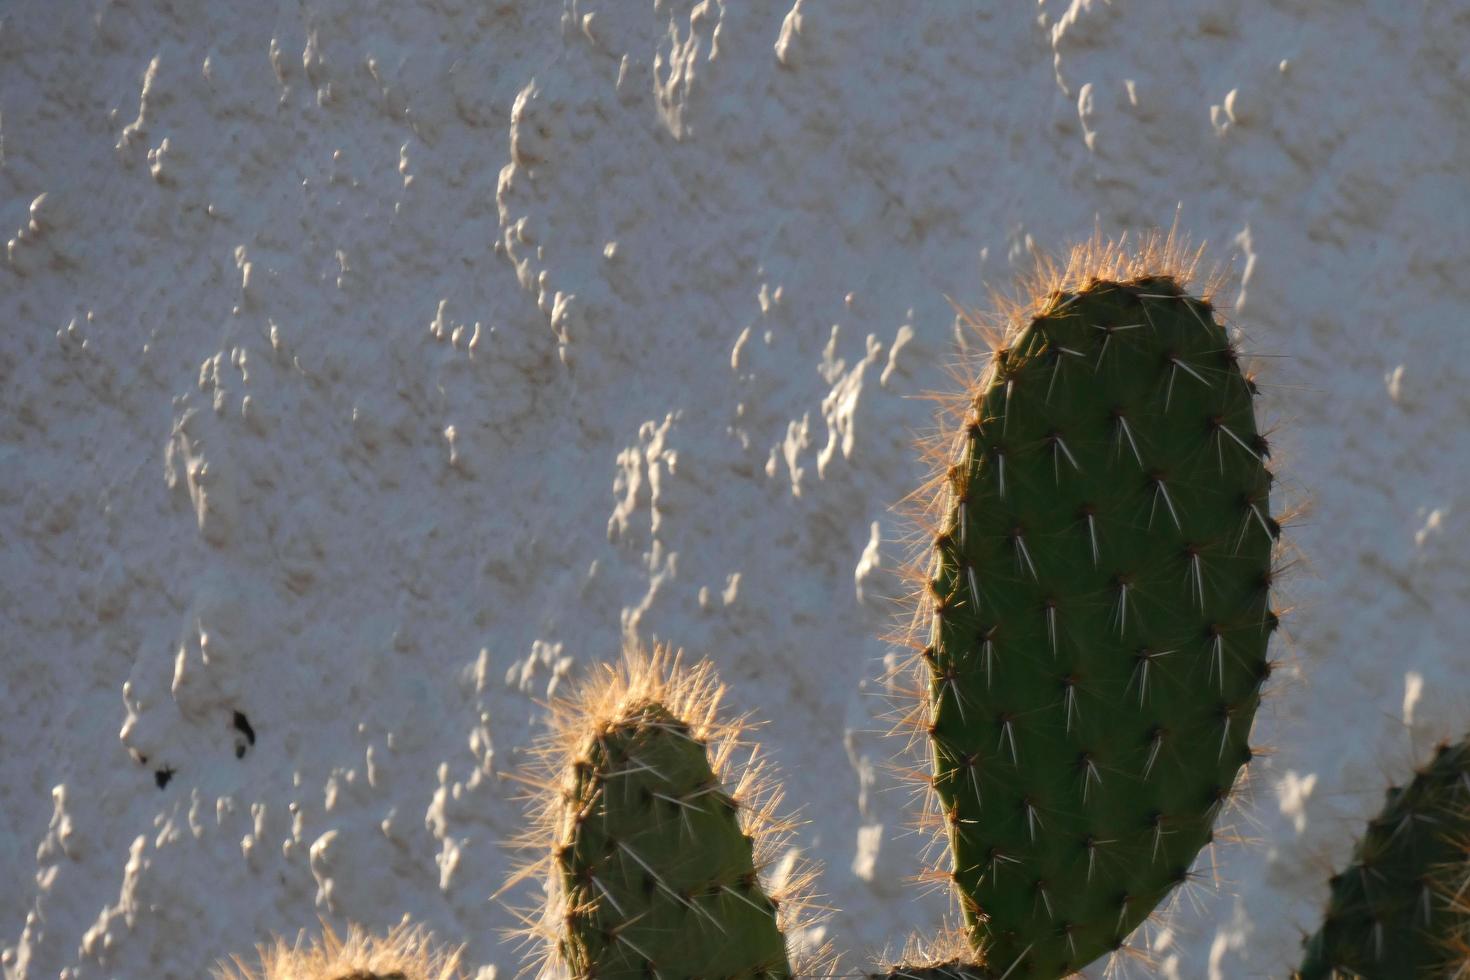 hinterleuchteter Kaktus, typisch für warme Gegenden mit wenig Wasser foto